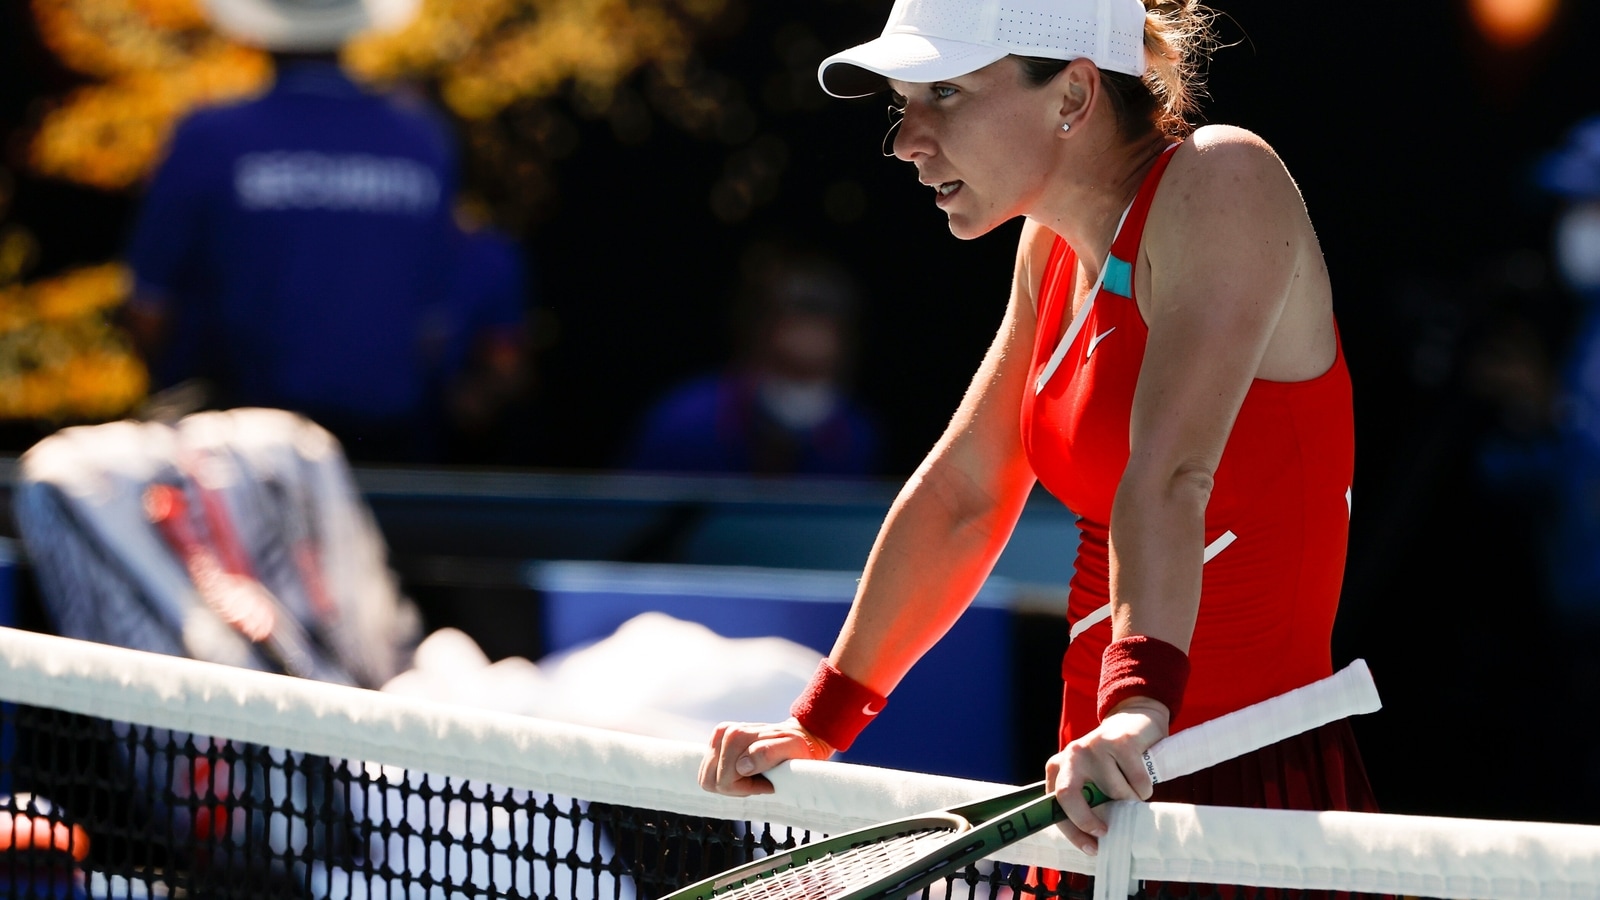 Aus Open Simona Halep out; Alize Cornet, Danielle Collins advance to quarters Tennis News